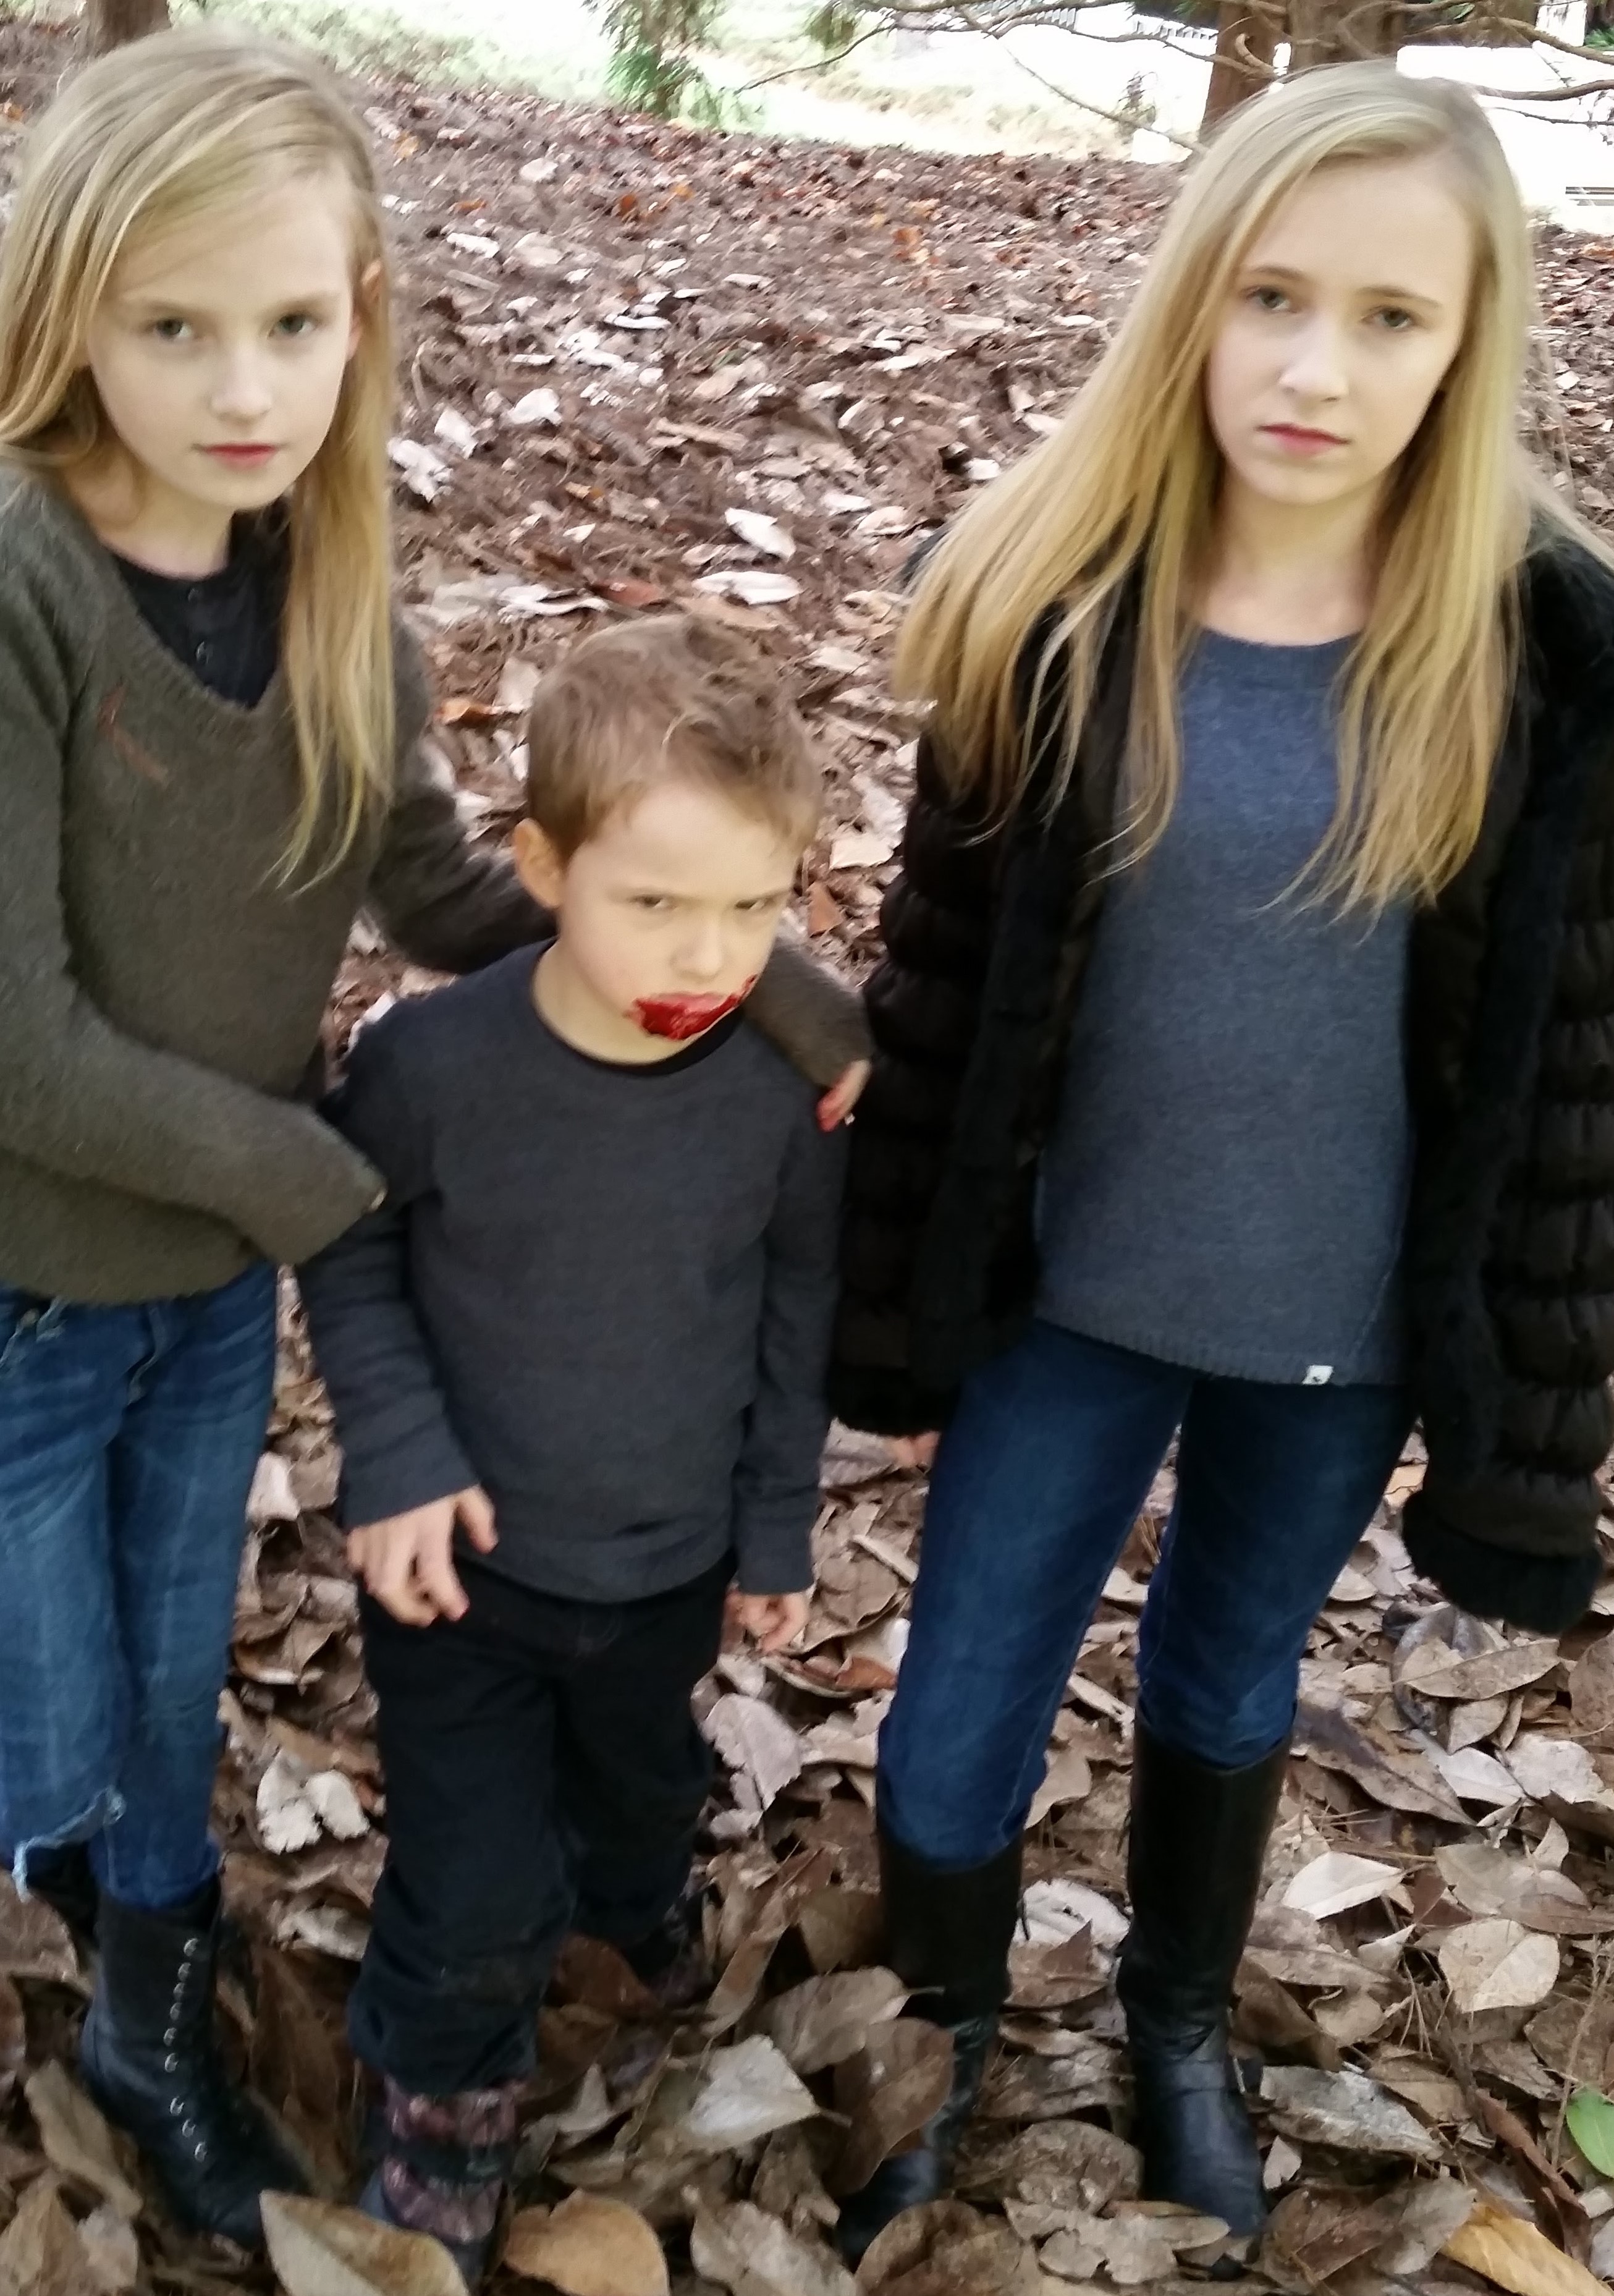 Landon and his sisters, Anaka and Karolina filming on set of 